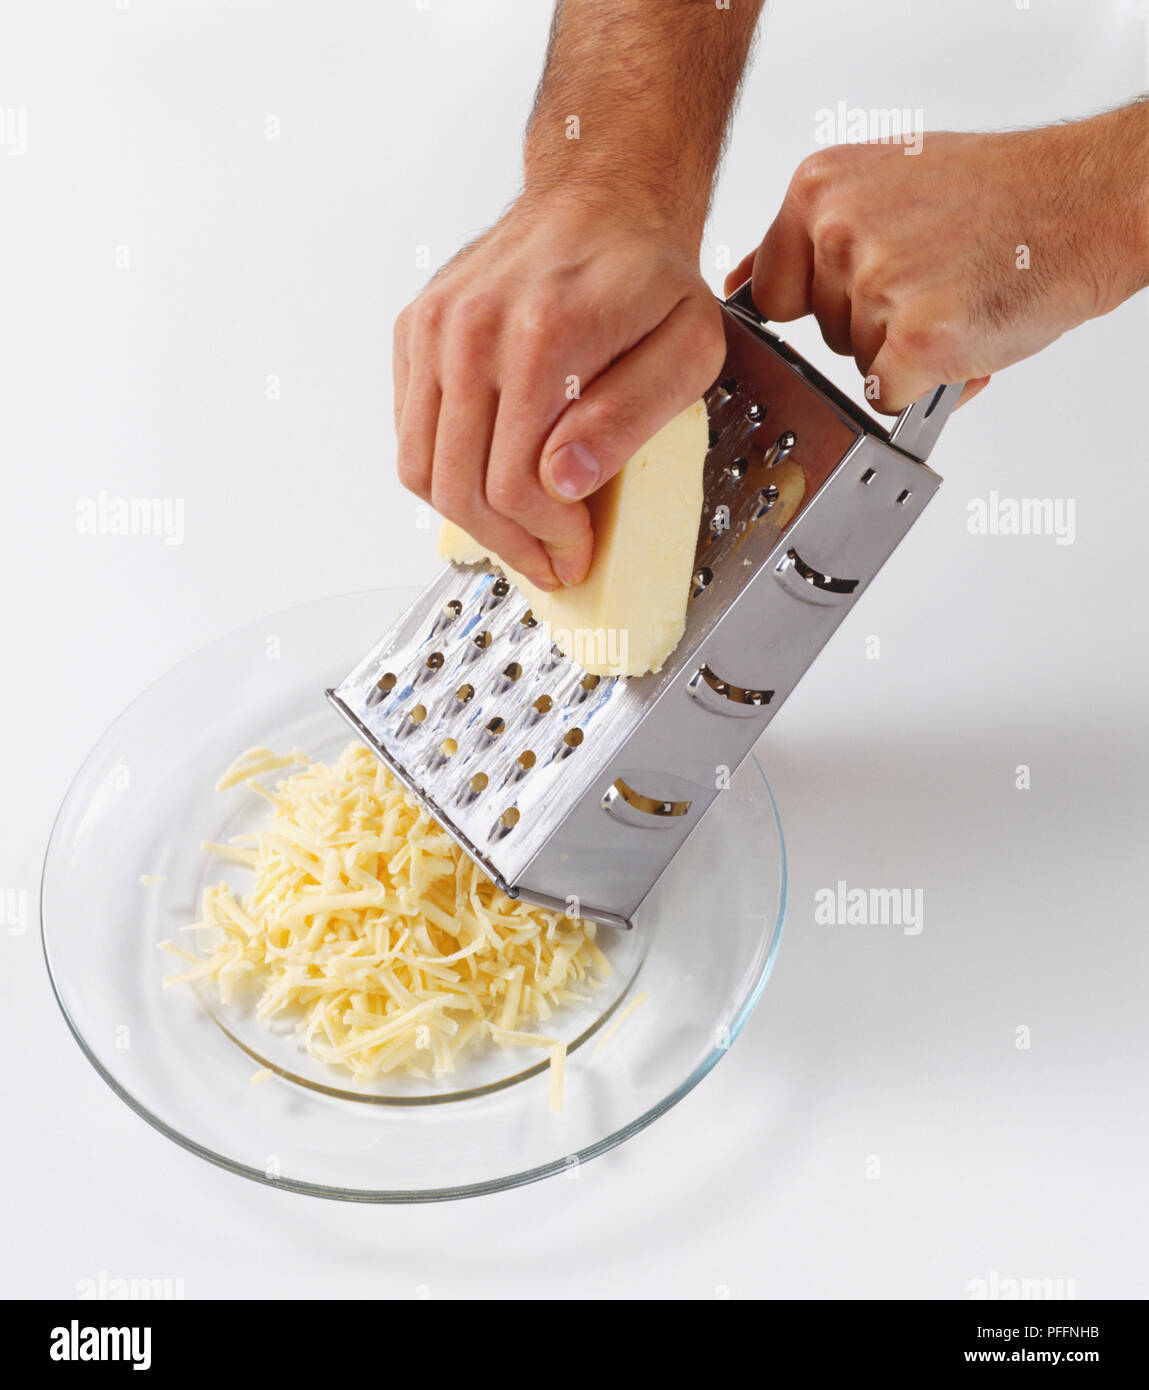 Utilizzando metallo grattugia manualmente per grattugiare il formaggio cheddar su una lastra di vetro chiara, ad alto angolo di visione Foto Stock